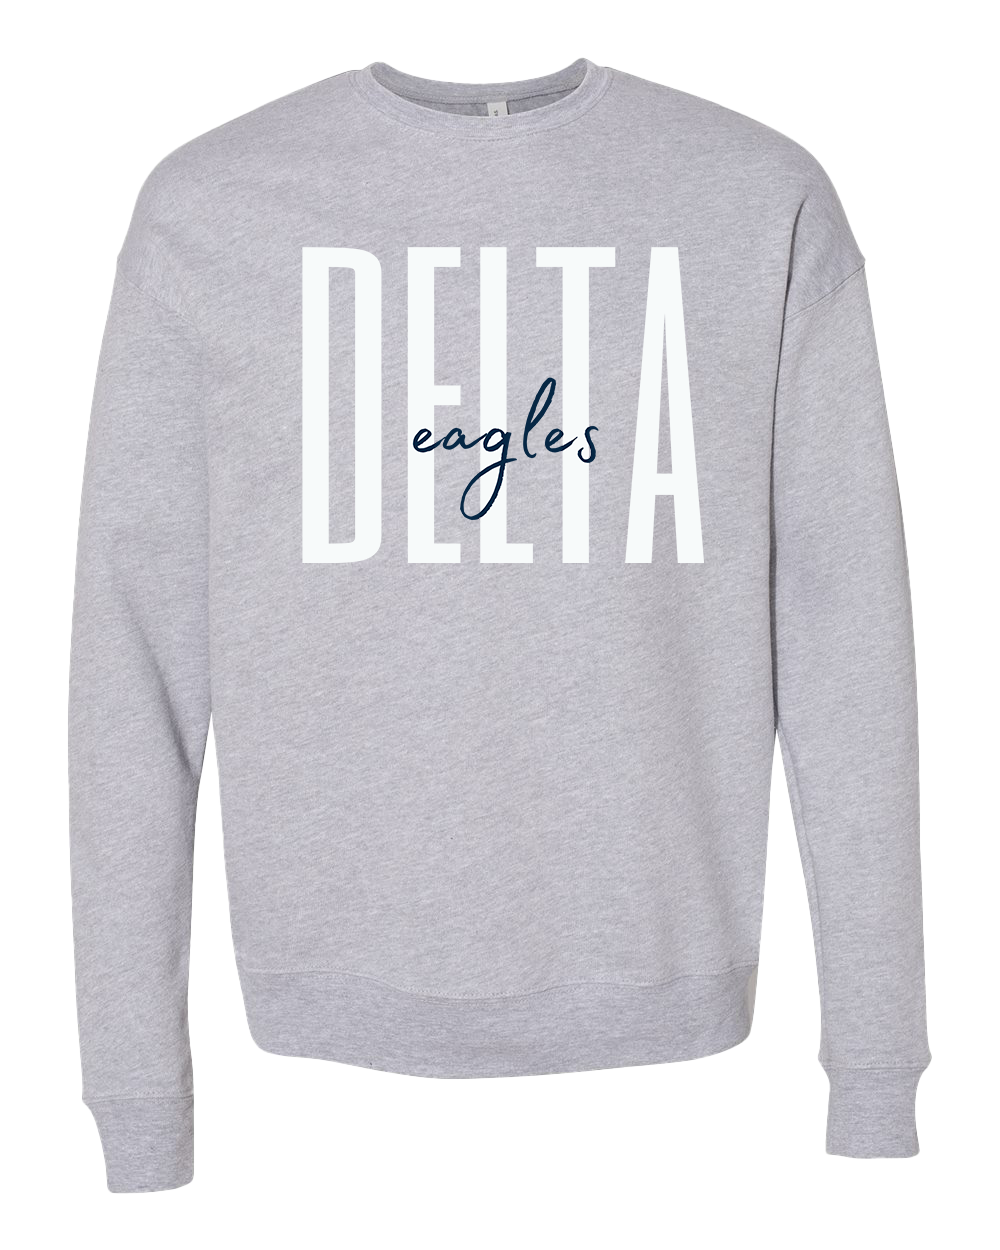 Delta Eagles Script Crew Sweatshirt - Athletic Heather